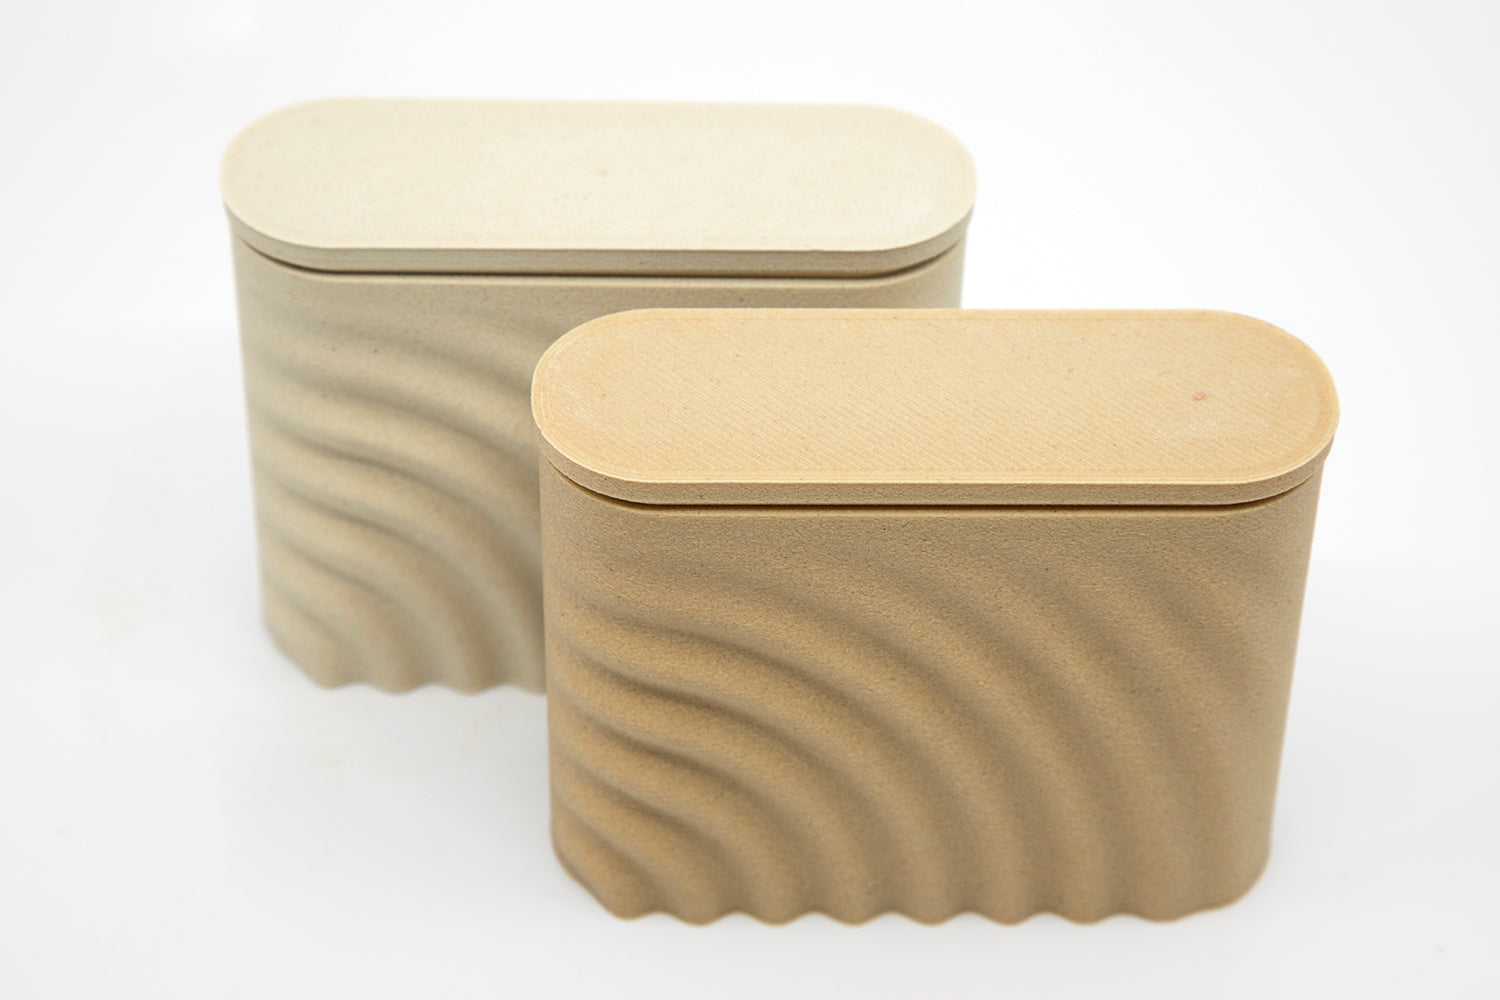 Design zeepdoos, gemaakt van gerecycled hout en maizena